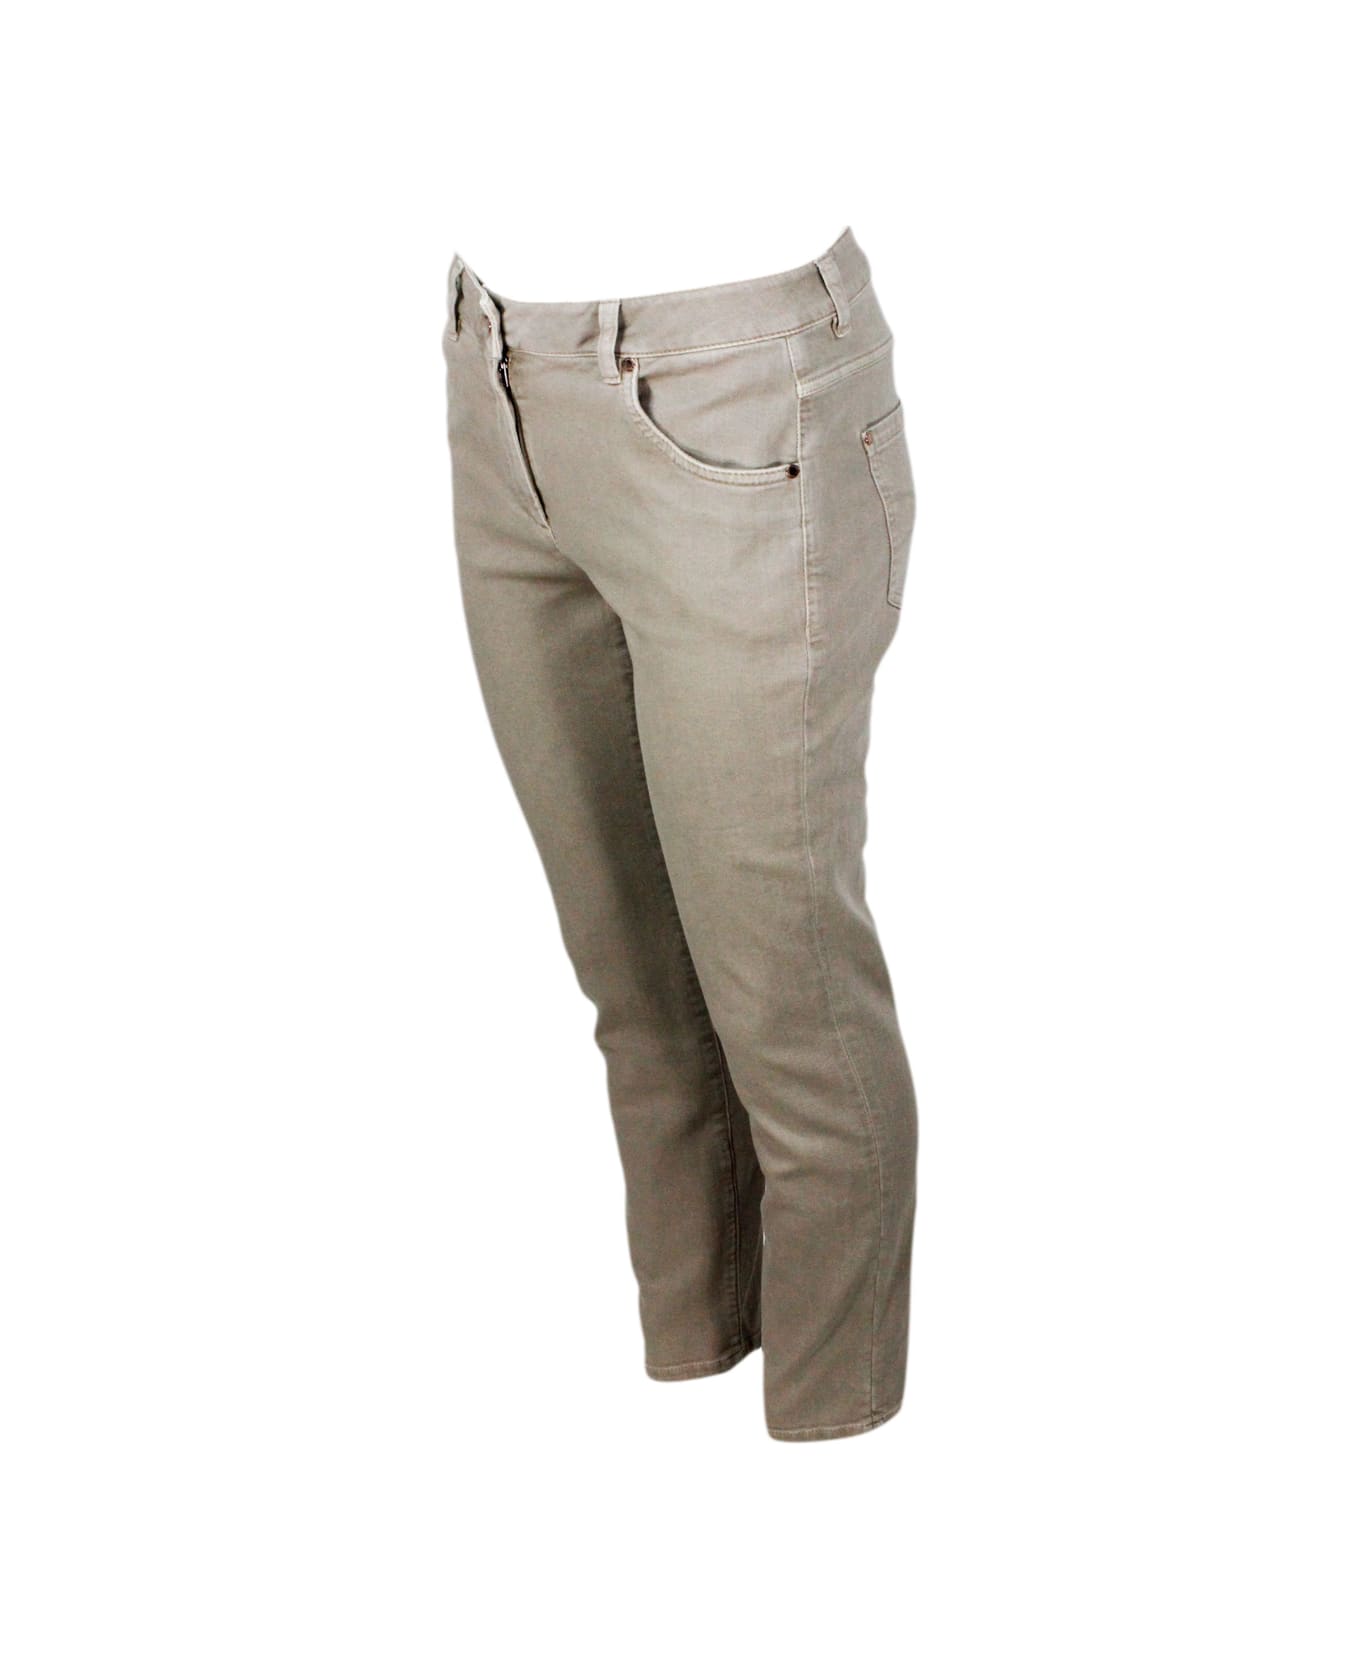 Brunello Cucinelli Pantalone A 5 Tasche In Drill Di Cotone Stretch Con Monile Sulla Tasca Posteriore - Beige freddo